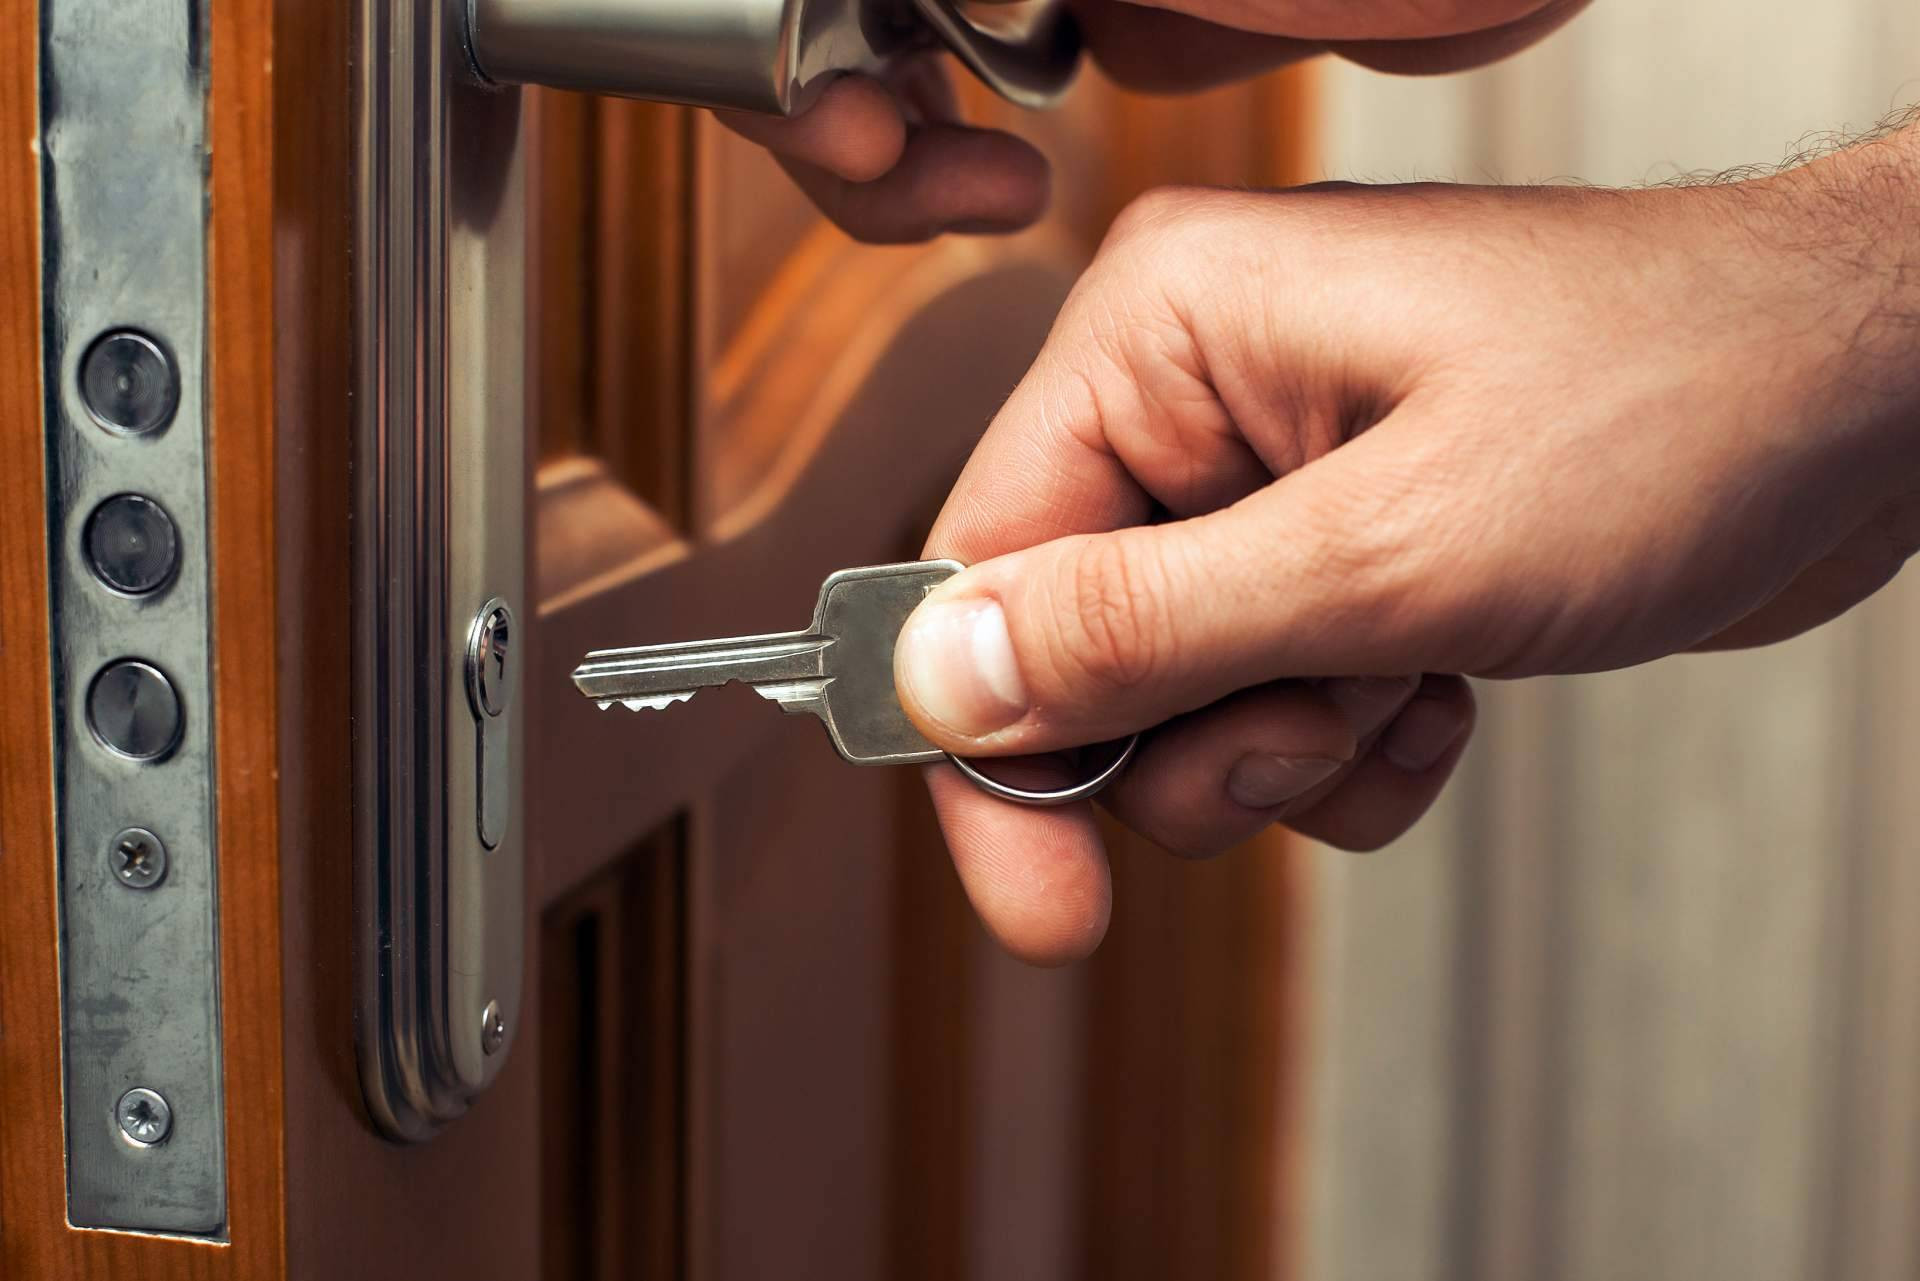  Mejorar la seguridad de la puerta del hogar o el negocio de la mano de Madrid Cerrajería 